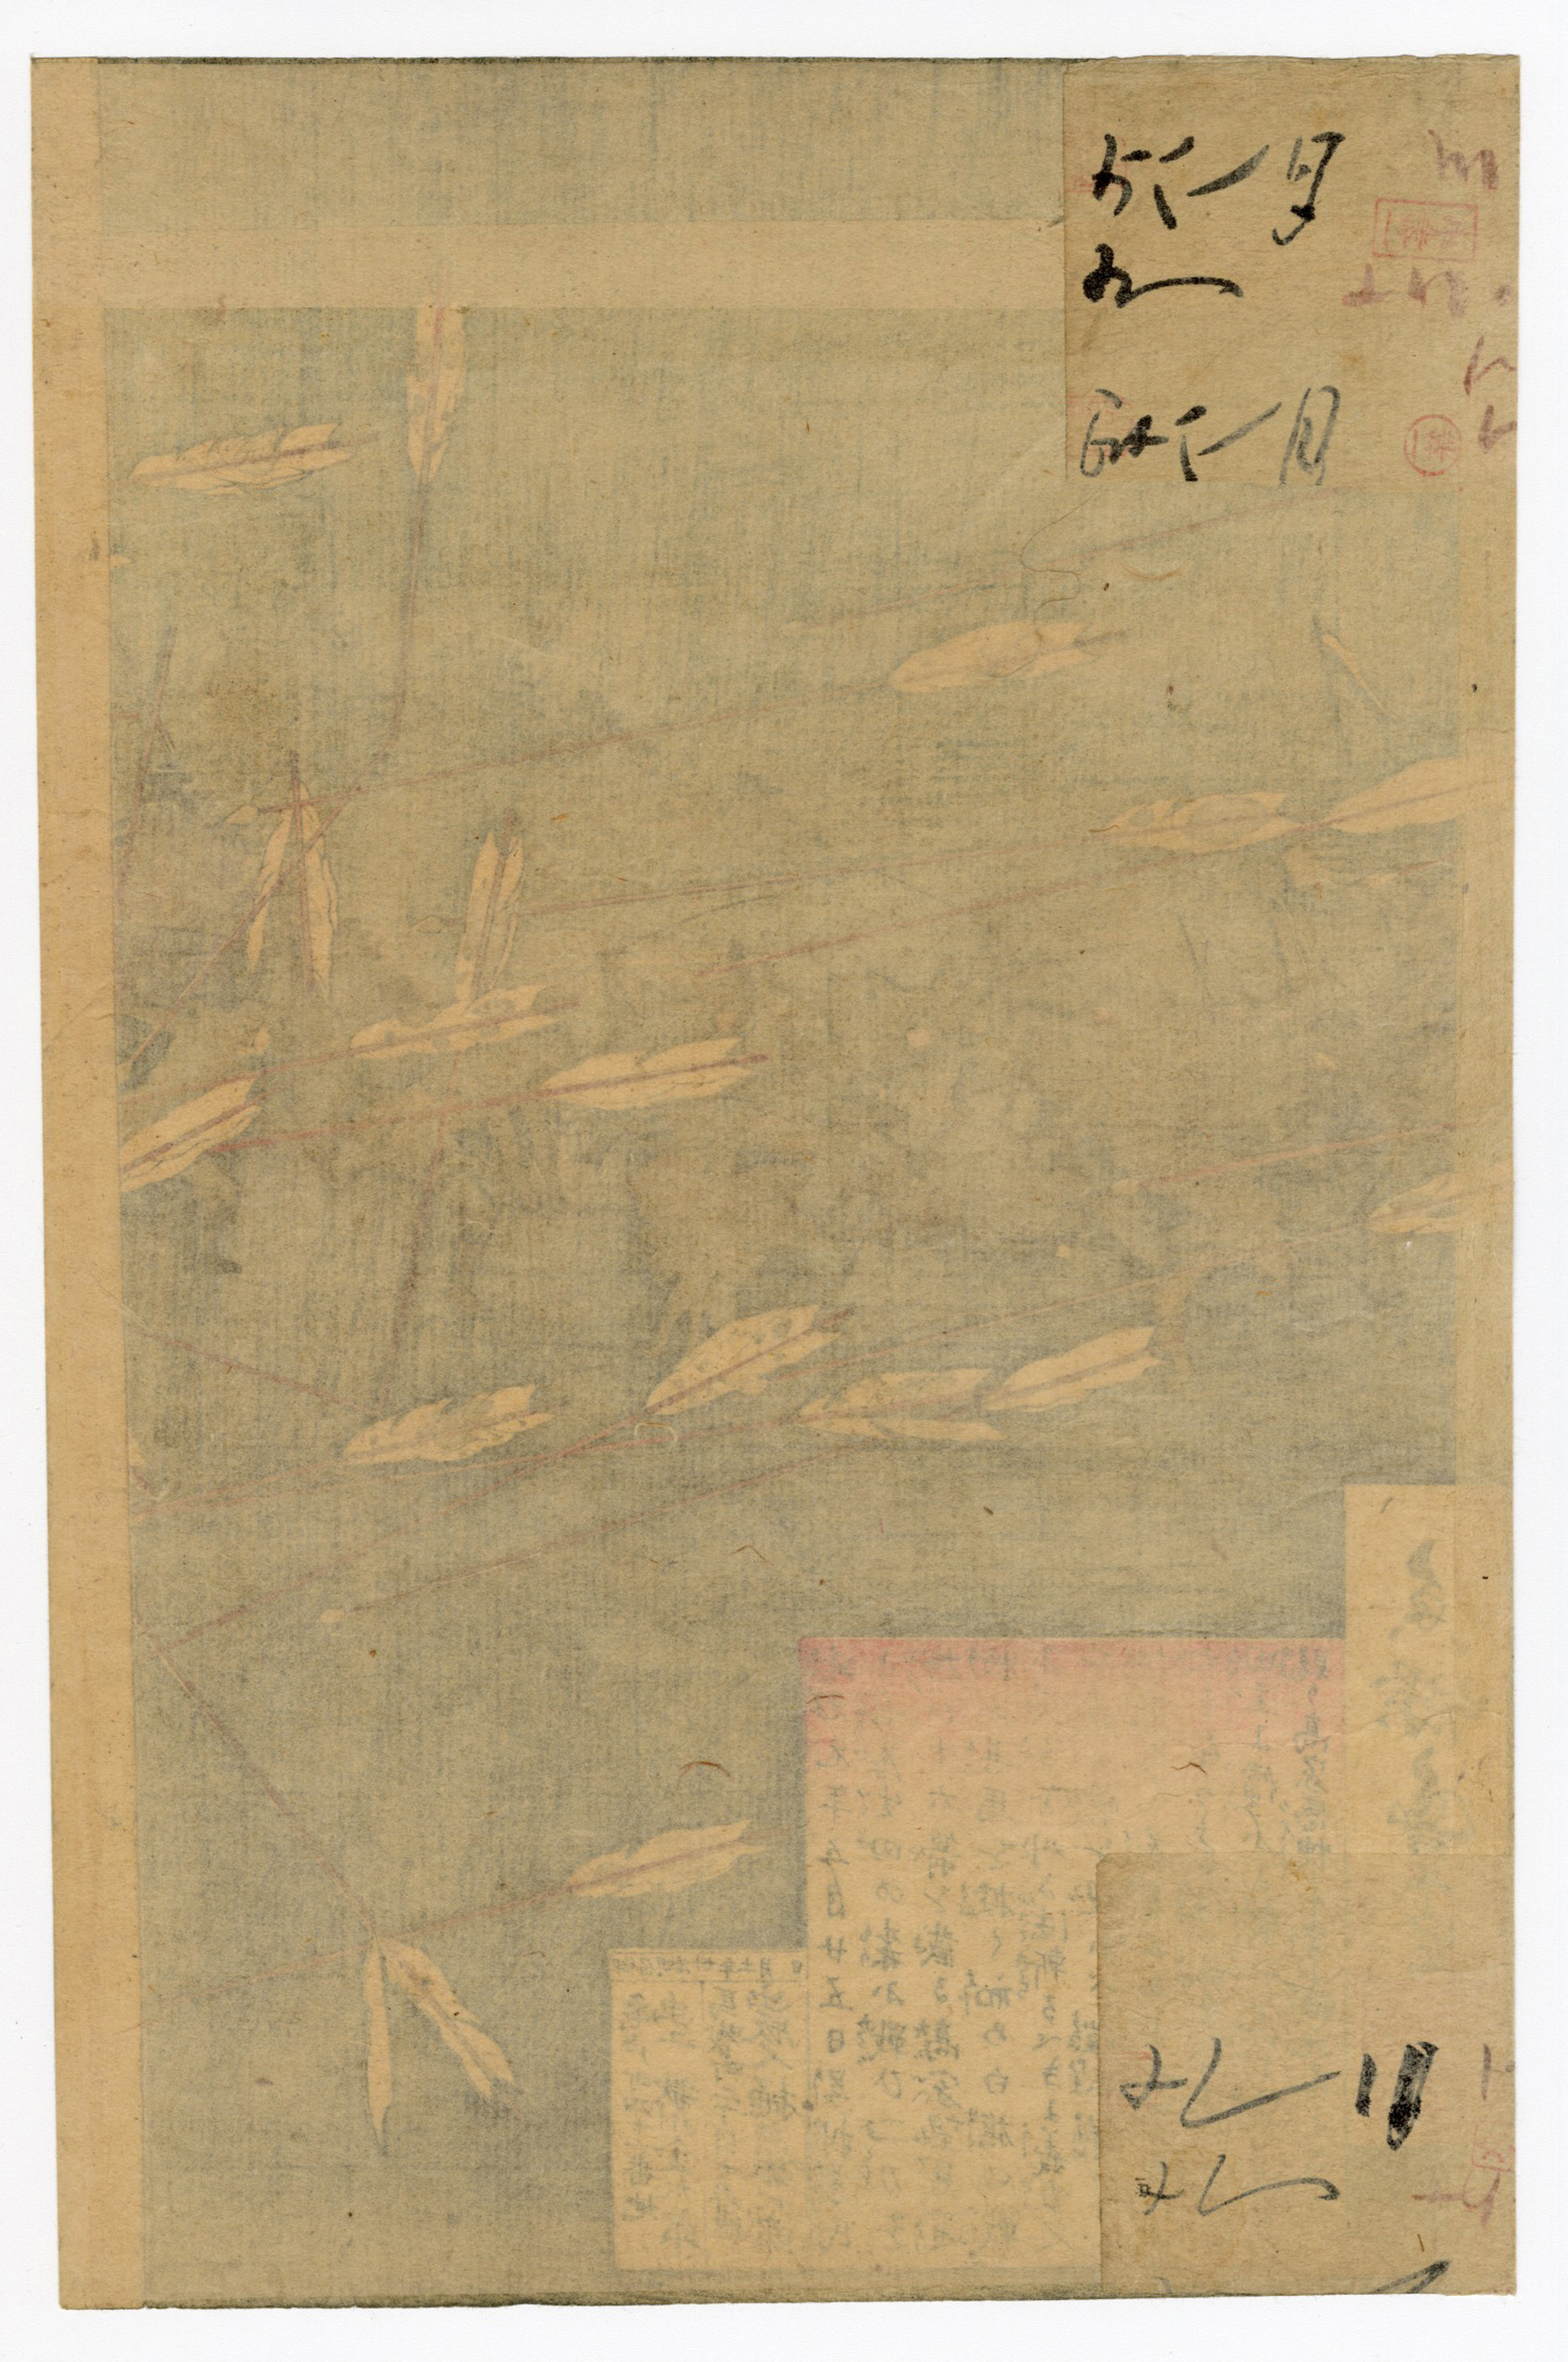 Nitta Yoshisada Dies in the Battle of Fujishima in Echizen by Toyonobu